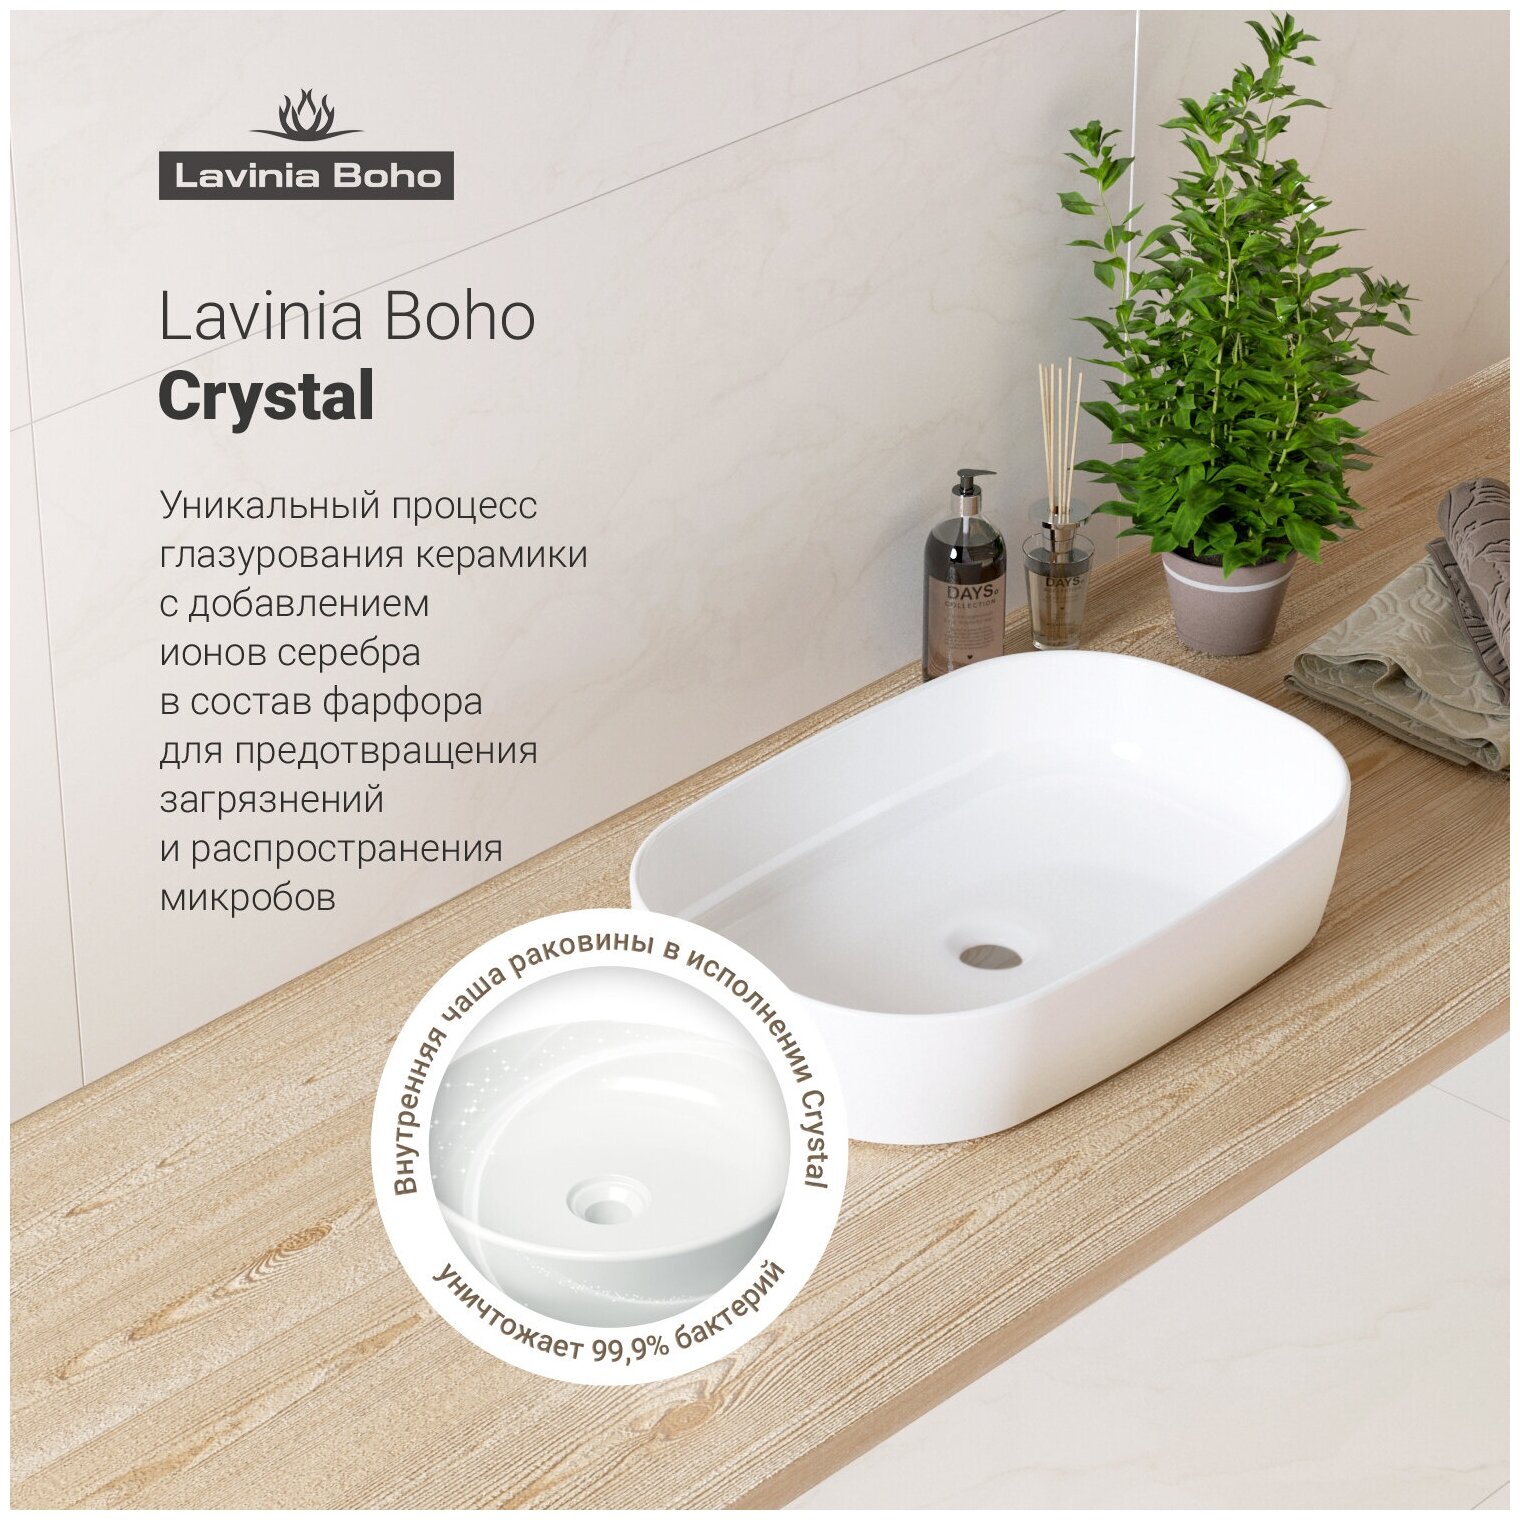 Комплект 3 в 1 Lavinia Boho Bathroom Sink 21520055: накладная фарфоровая раковина 54 см, металлический сифон, донный клапан - фотография № 4